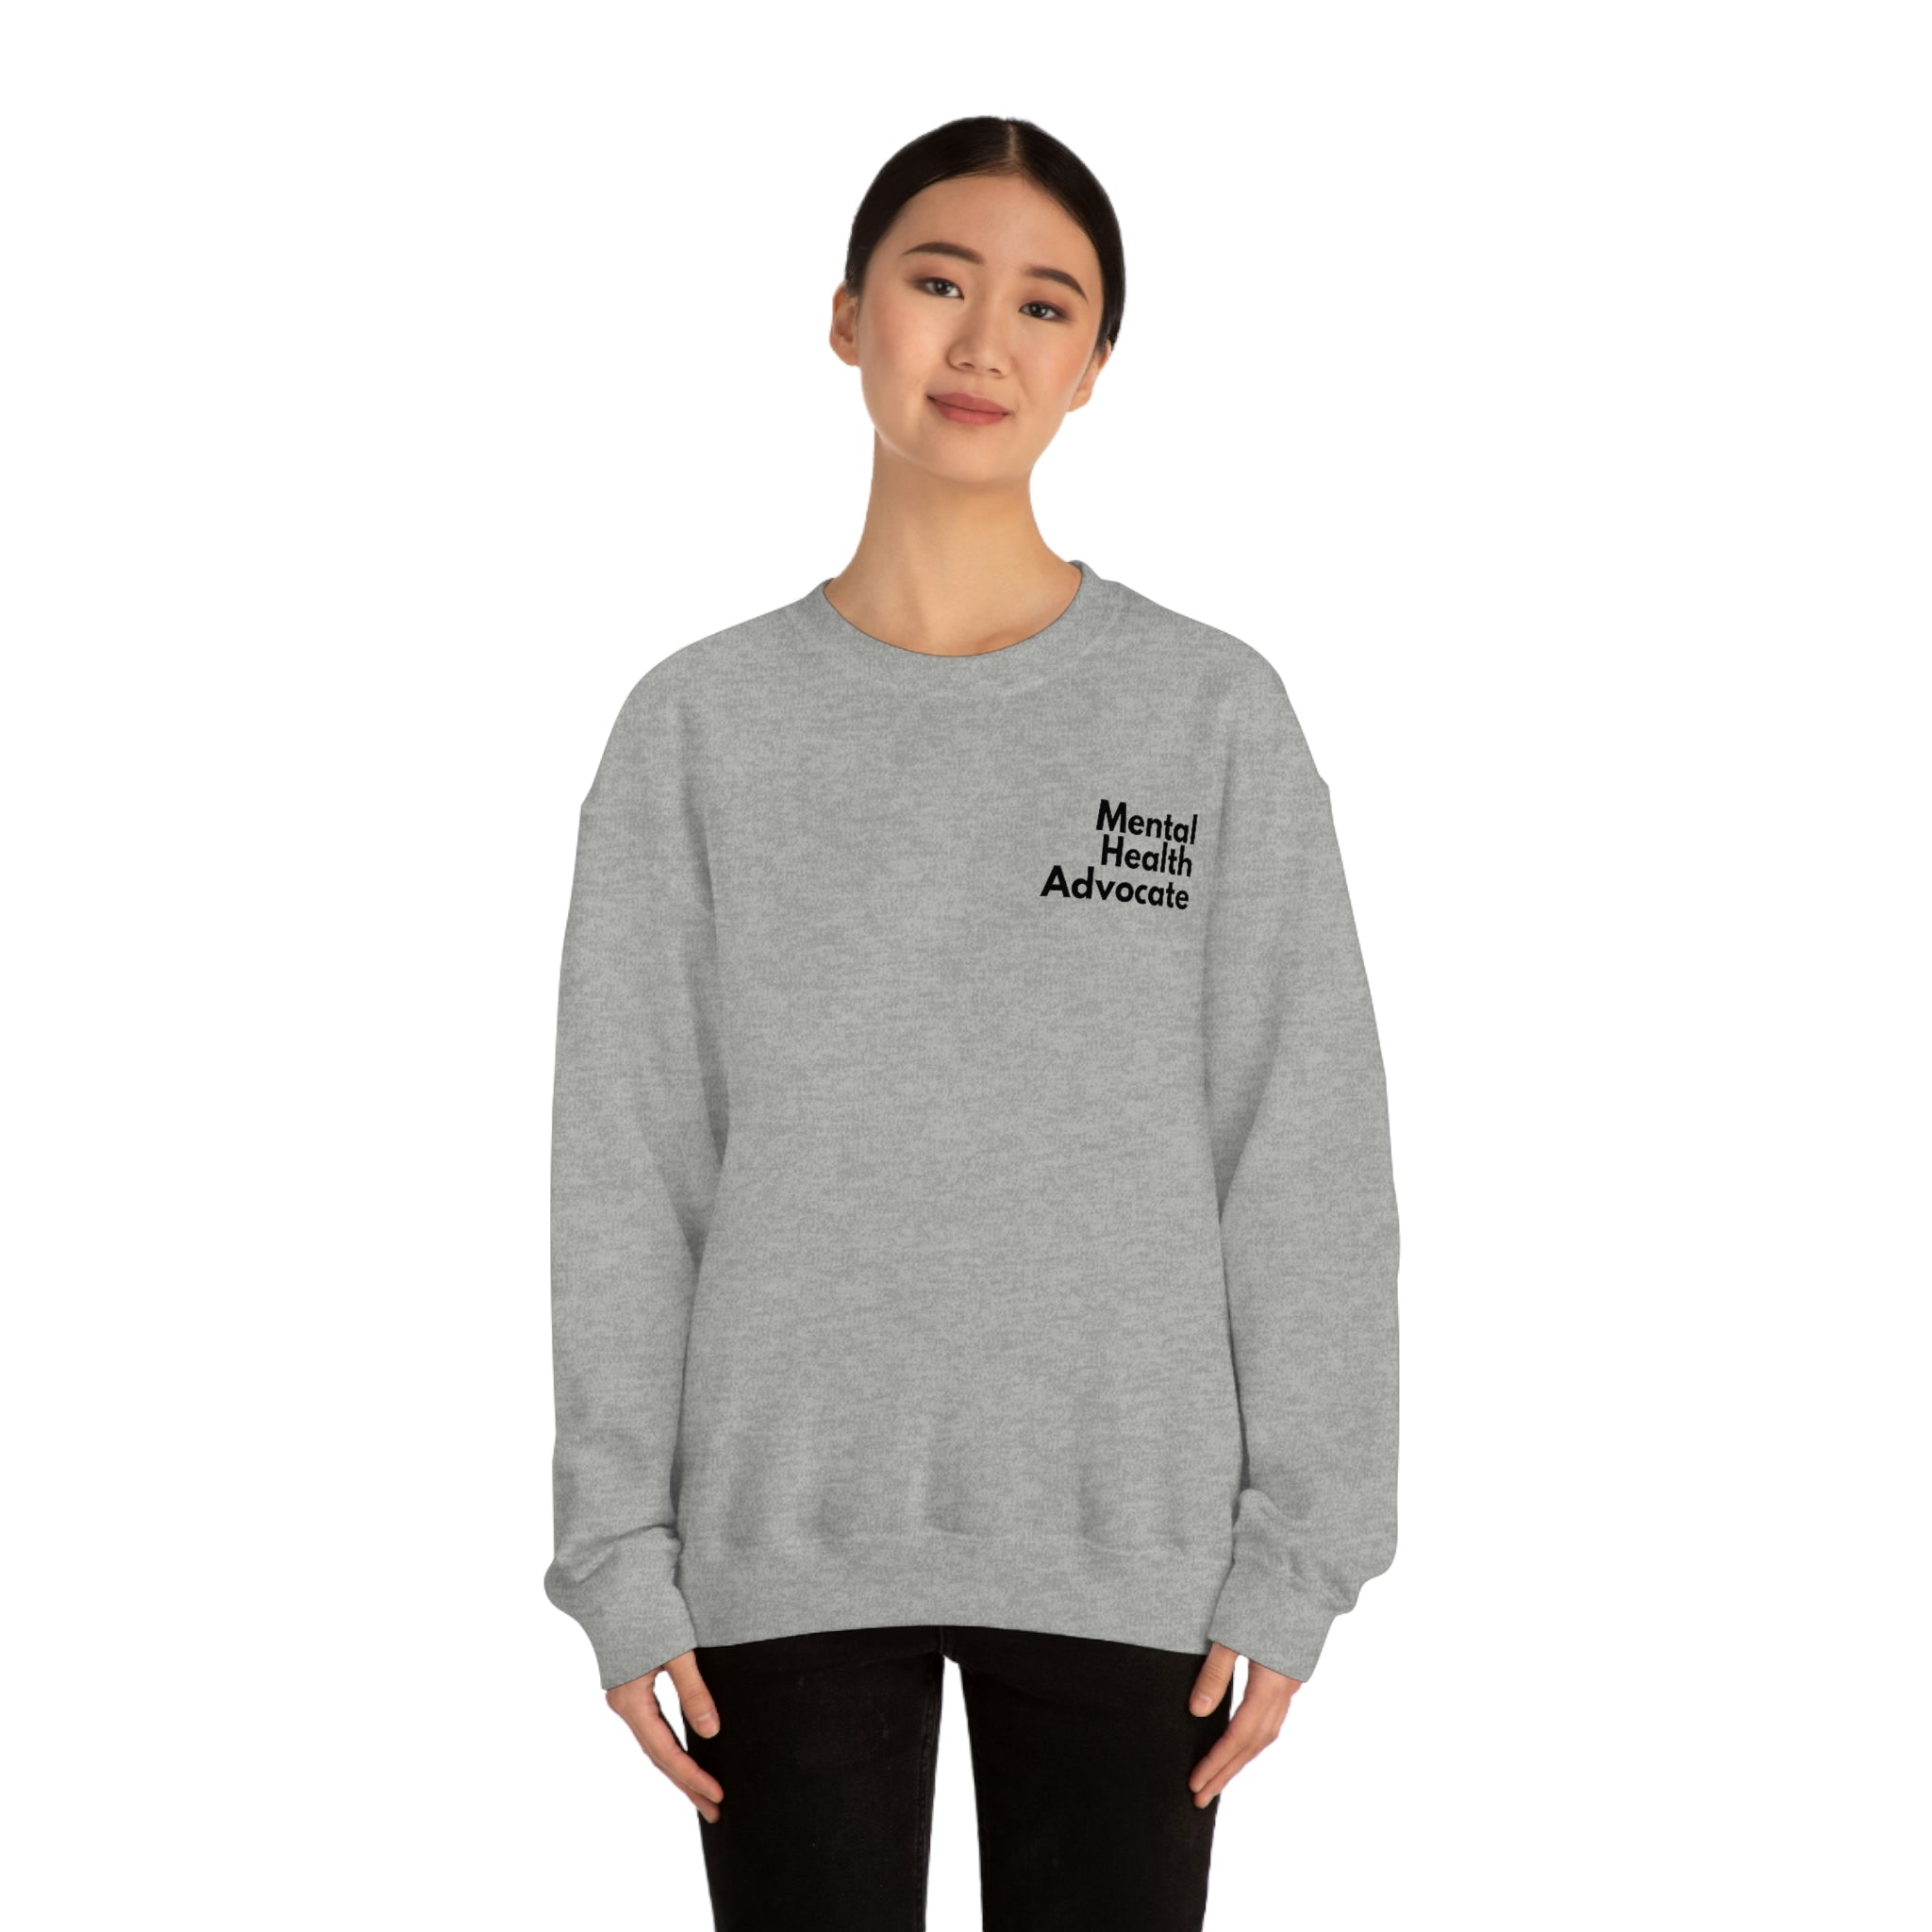 "Mental Health Advocate" Minimalist Unisex Sweatshirt